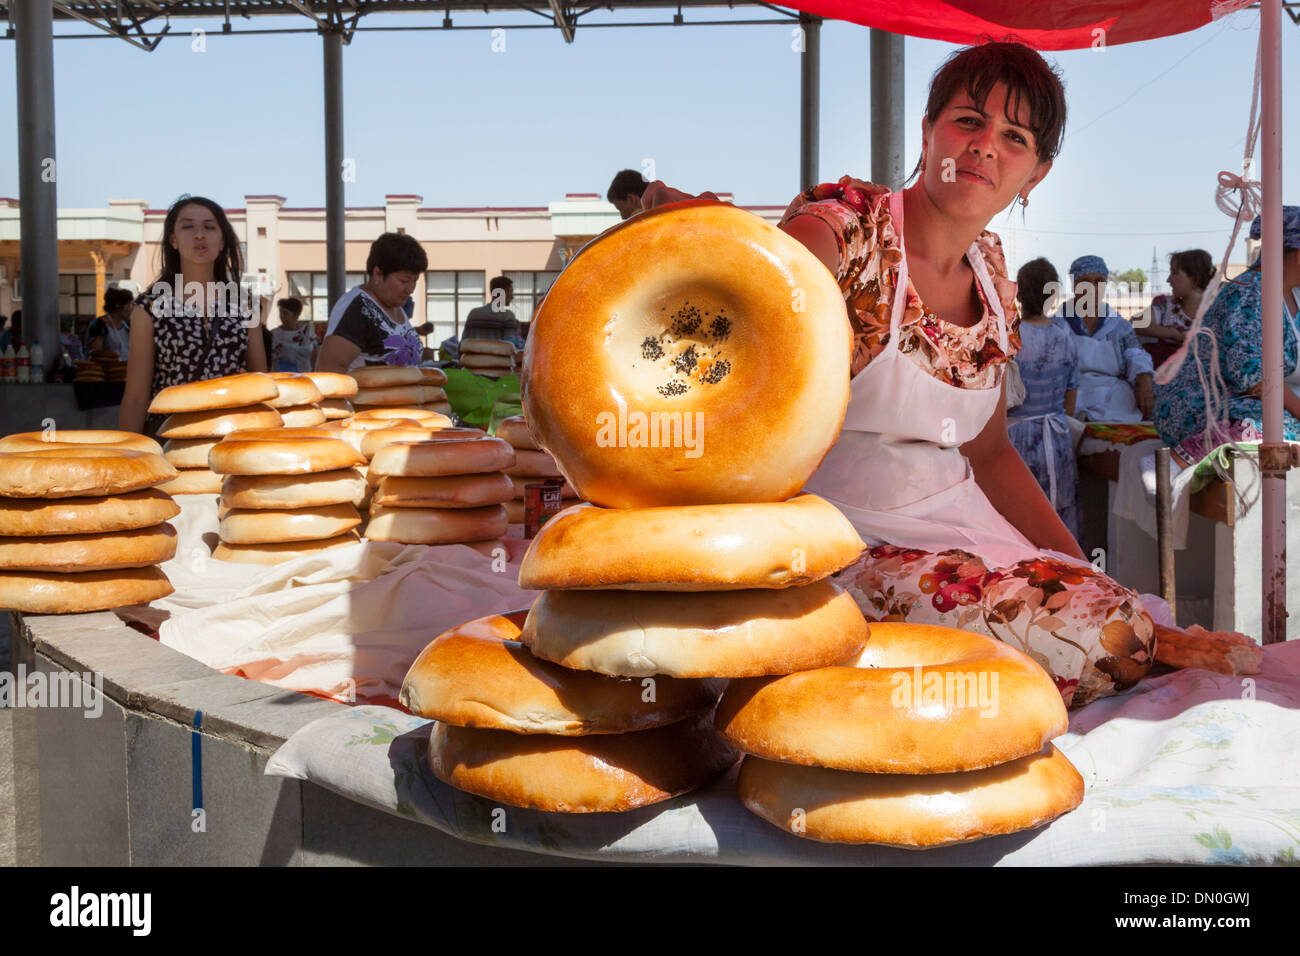 Woman selling non bread, Siyob Market, also known as Siab Market, Samarkand, Uzbekistan Stock Photo